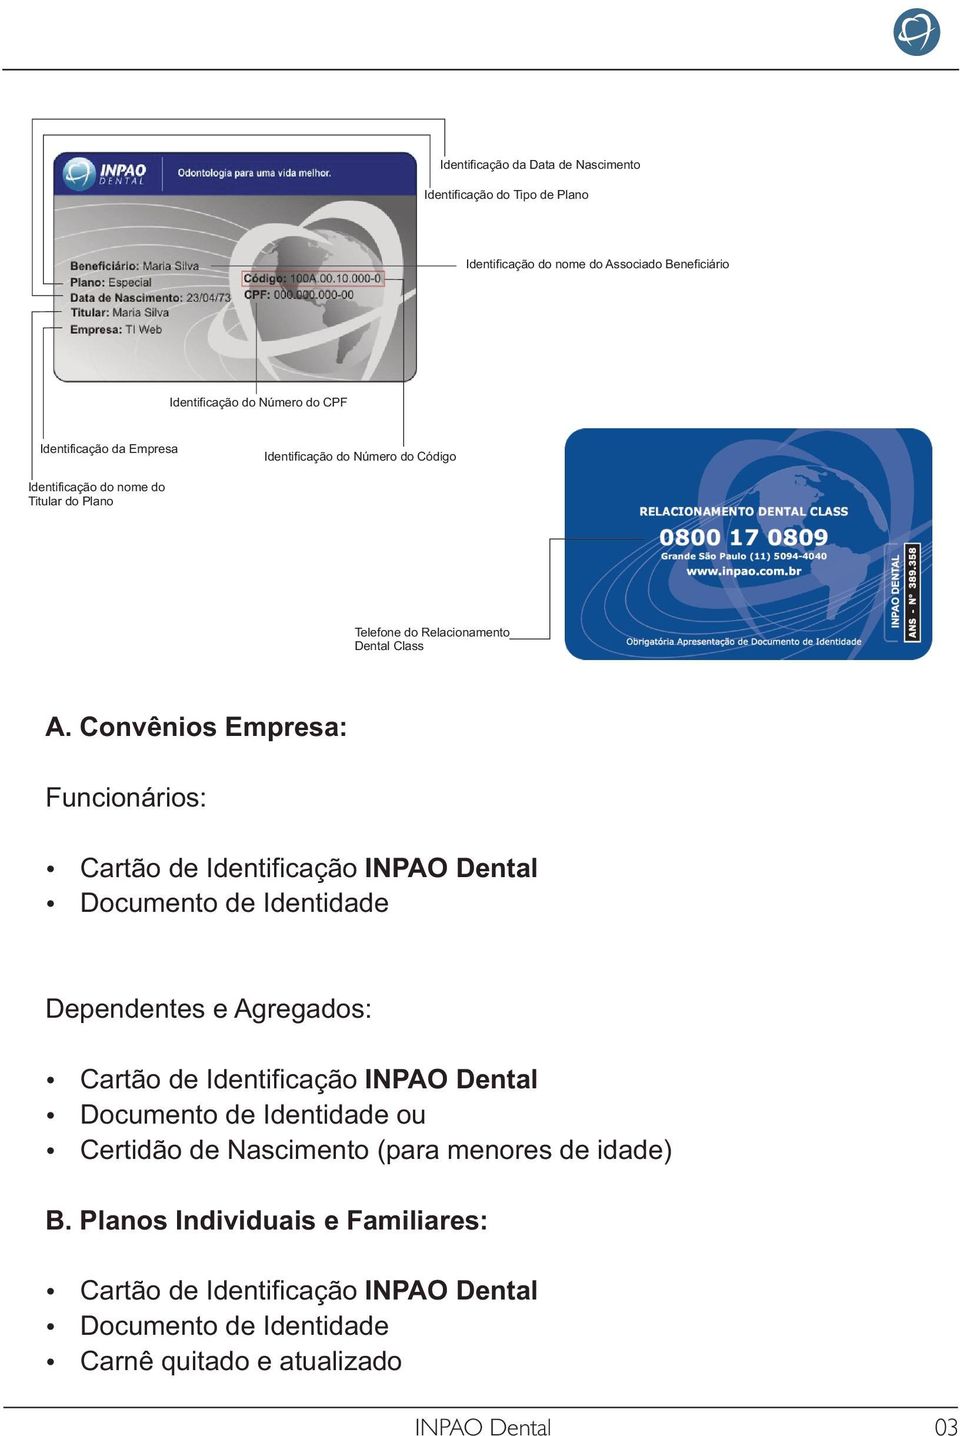 Convênios Empresa: Funcionários: Cartão de Identificação INPAO Dental Documento de Identidade Dependentes e Agregados: Cartão de Identificação INPAO Dental